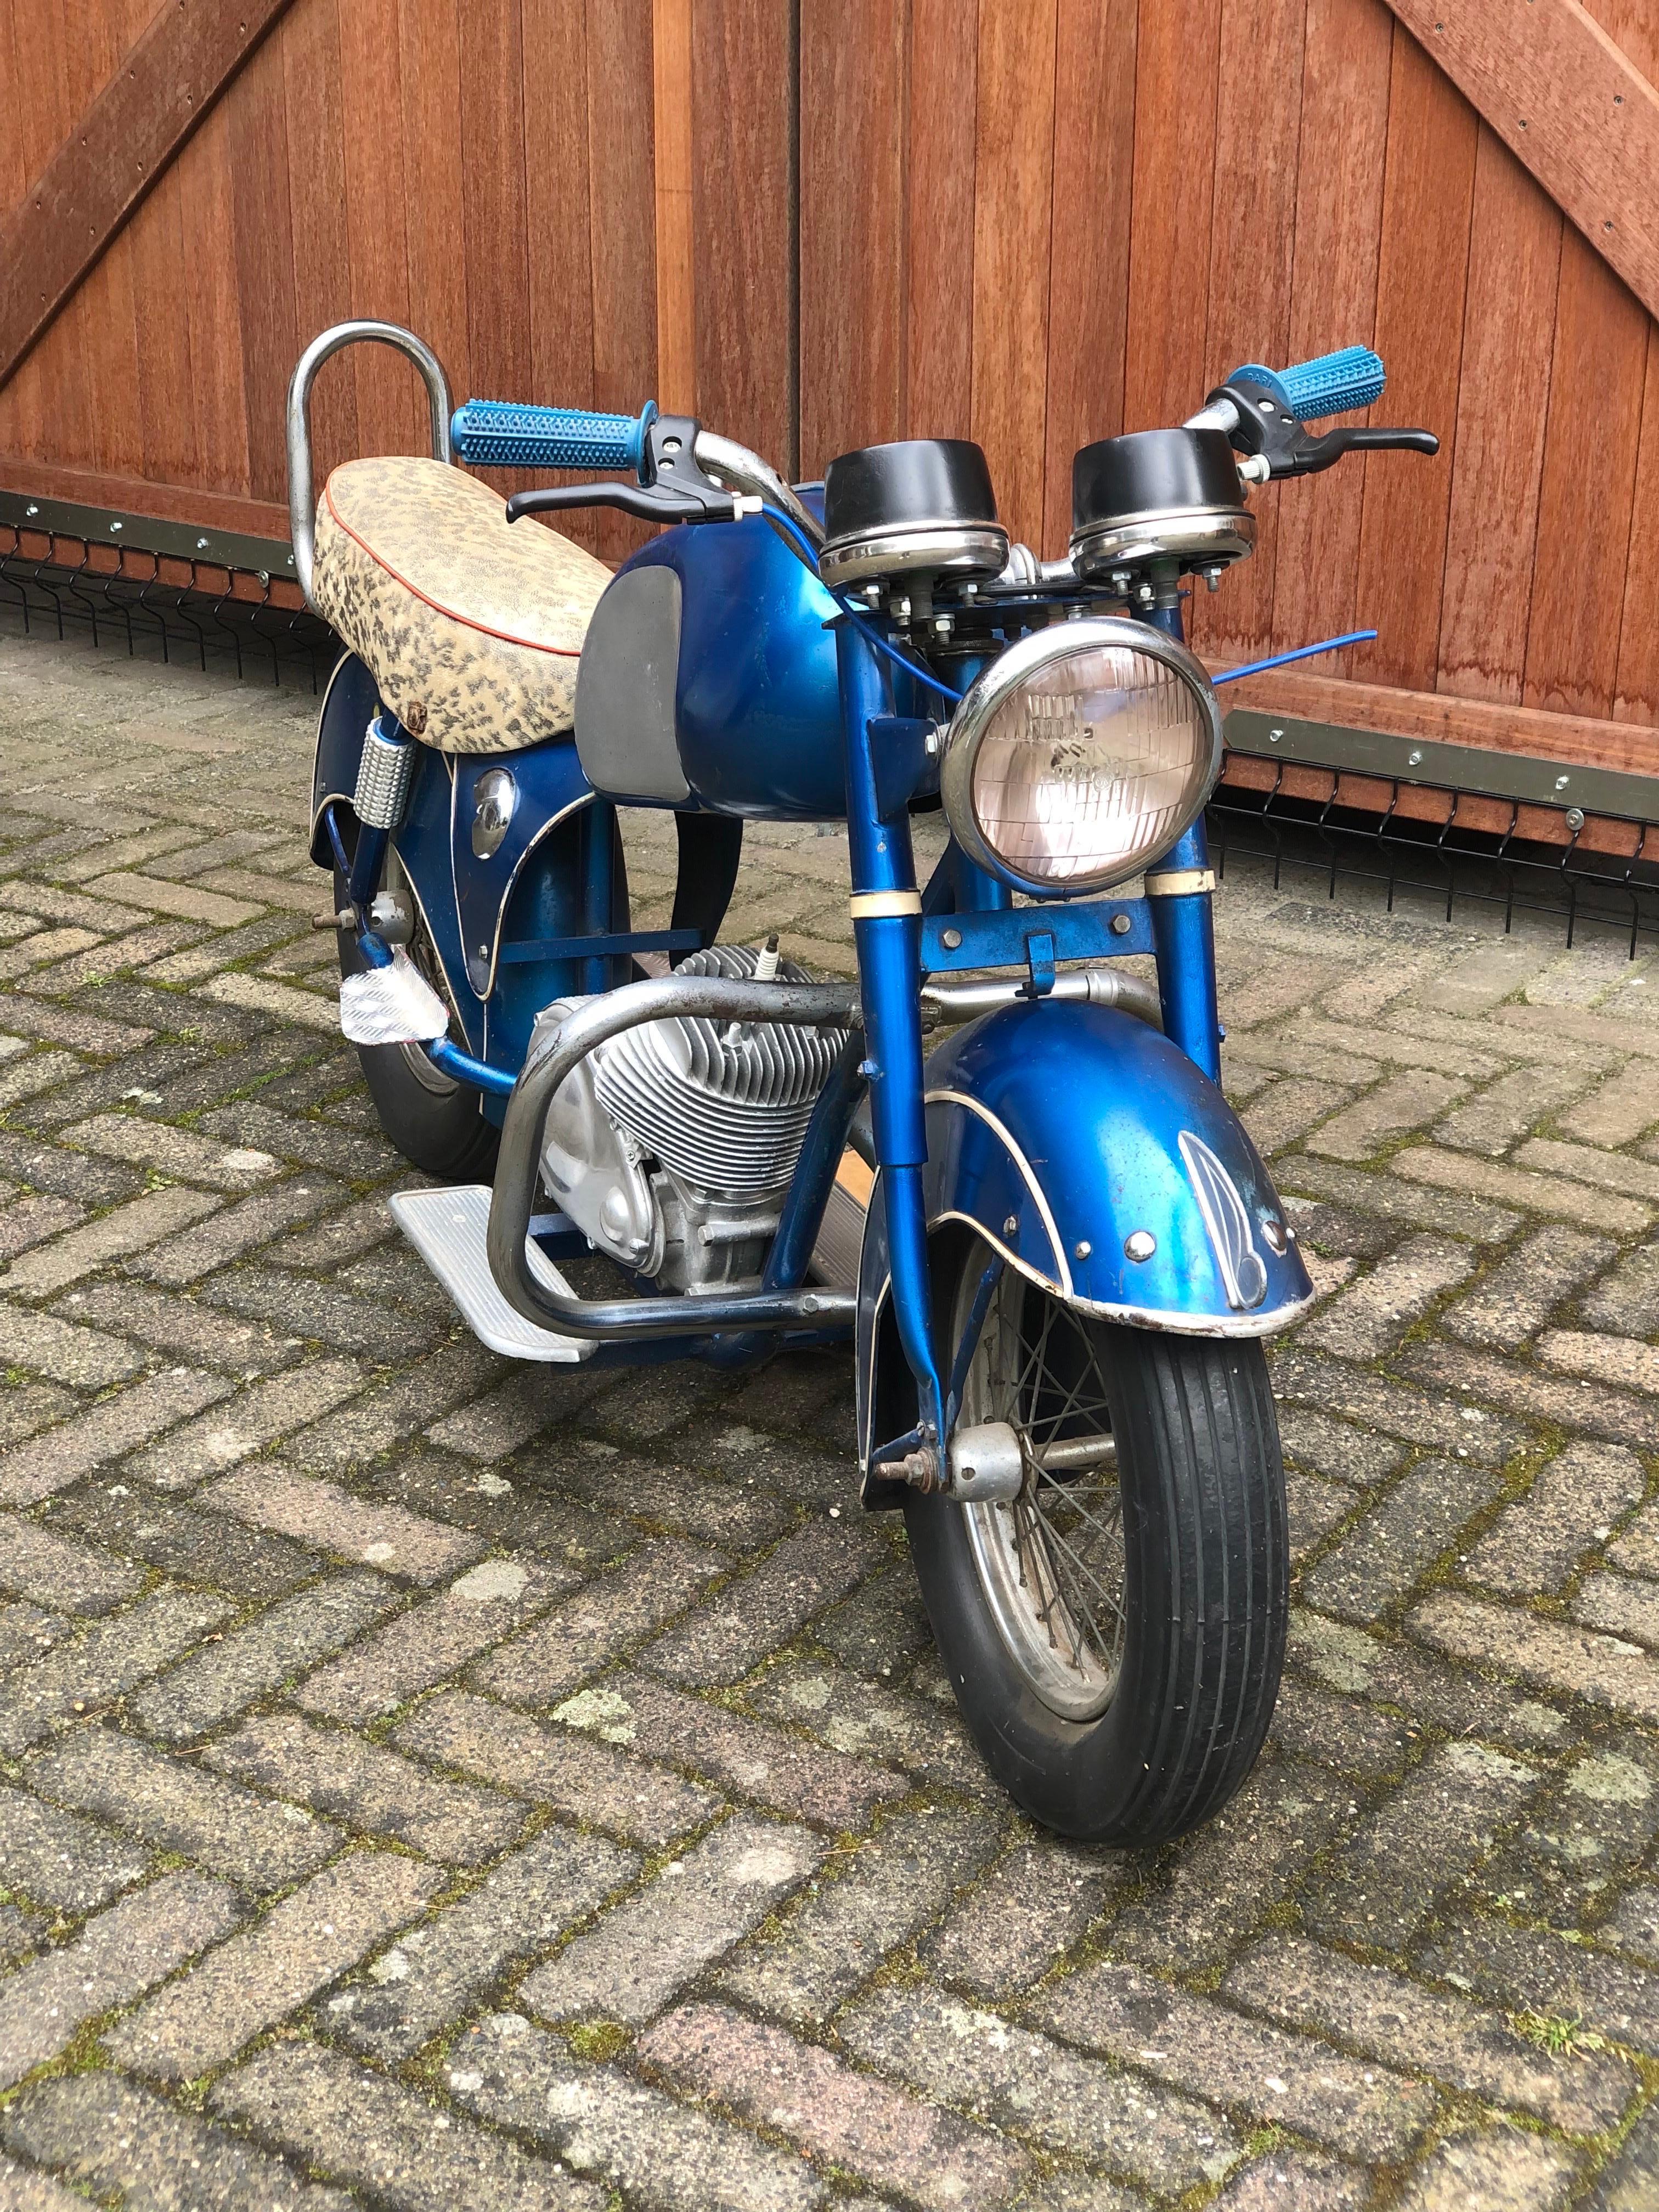 Carousel Motorcycle - Motorbike - Motocyclette par Fonlupt France. 
Une moto d'enfant vintage française utilisée sur le rond-point - manège - fête foraine. 
Un modèle de racer en métal des années 1950 - cafe racer pour enfant, fabriqué par Fonlupt